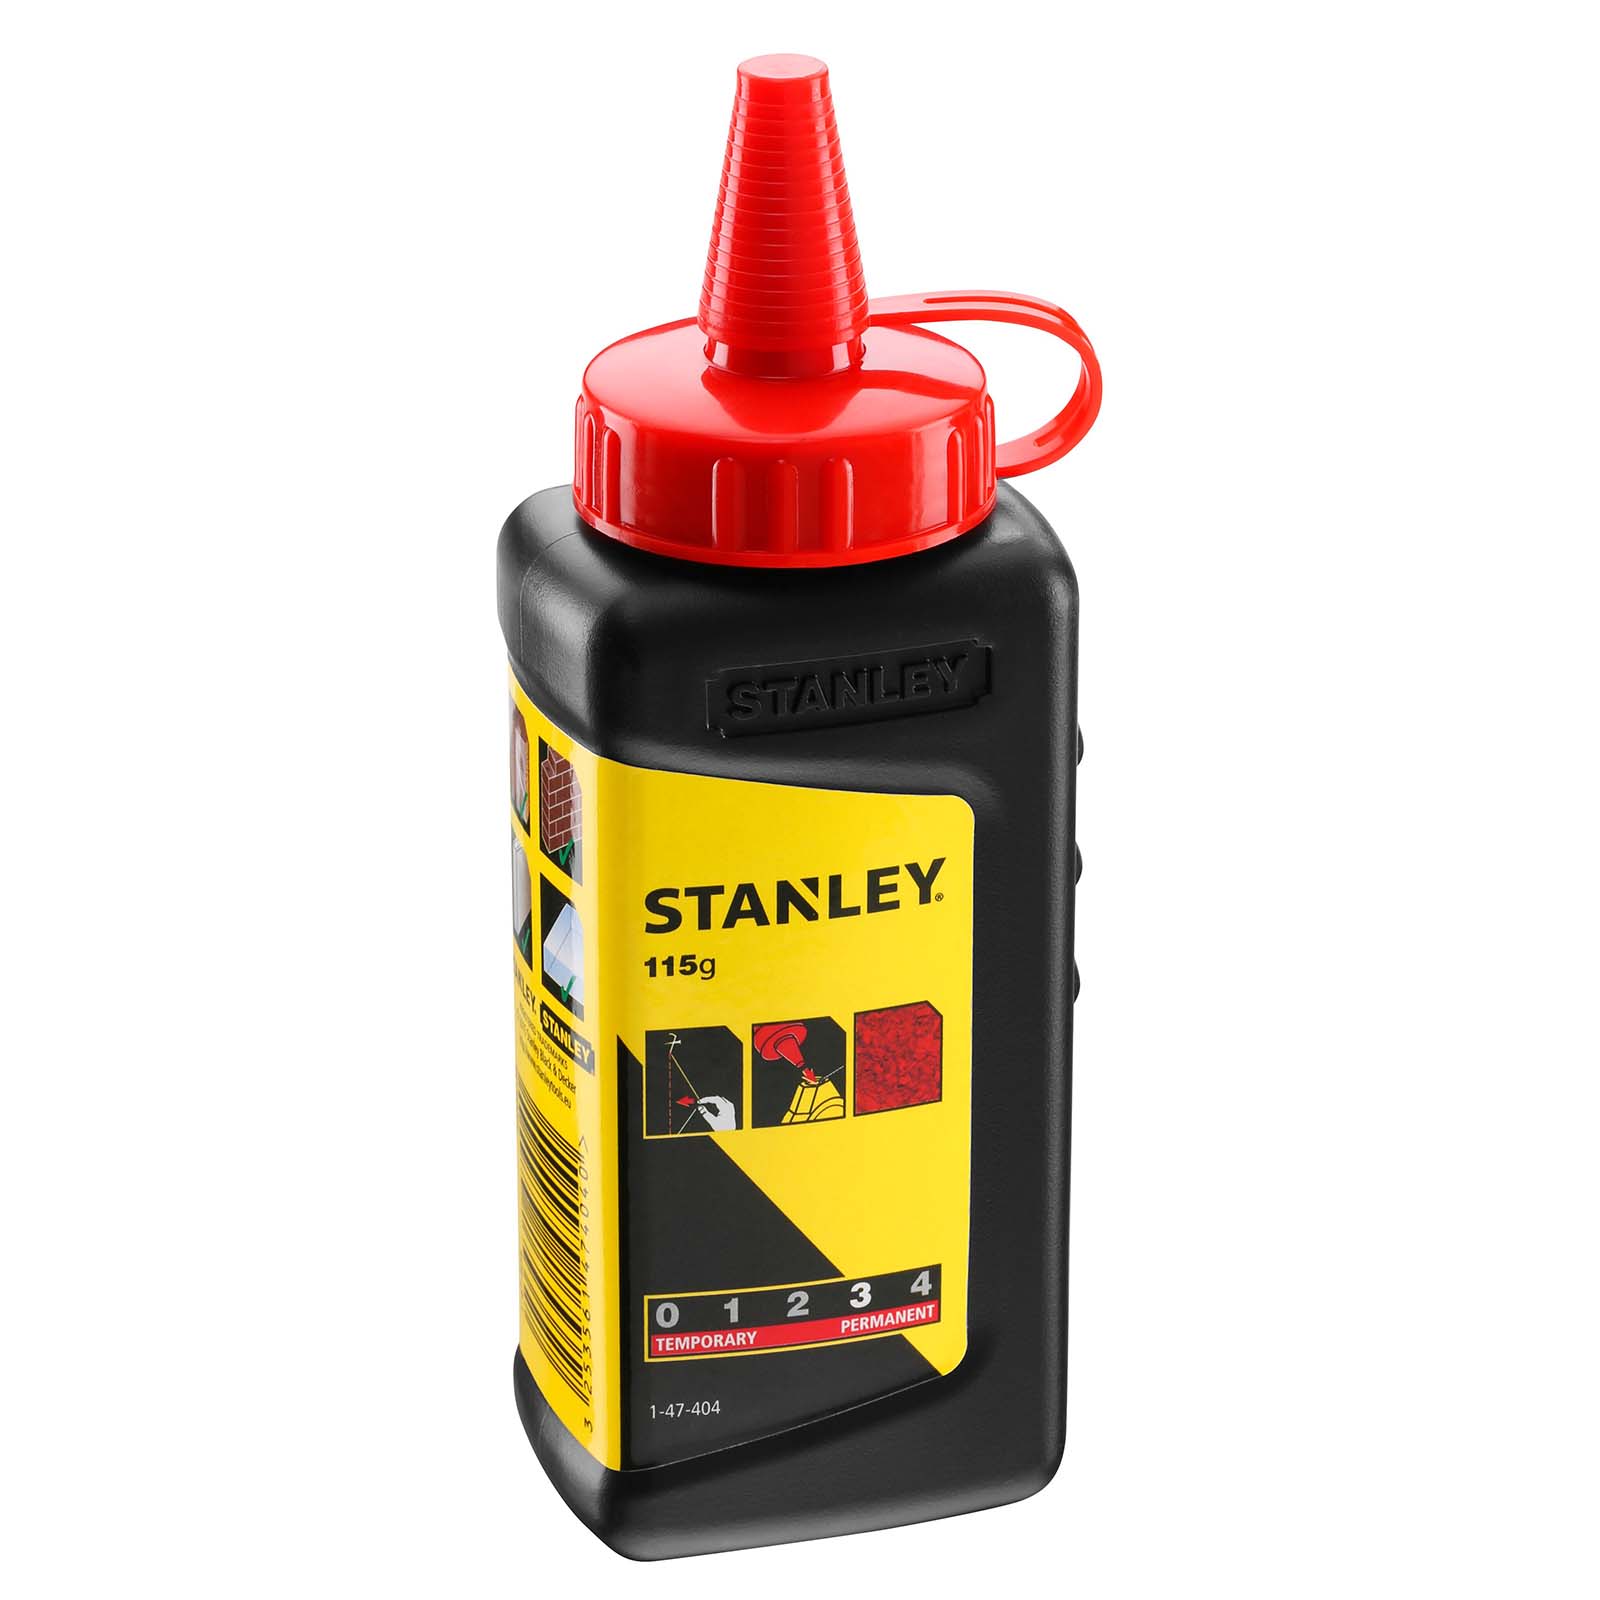 STANLEY Schlagschnurkreide 1-47-404 115g - Schlagschnurpulver rot, Markierfarbe von STANLEY®